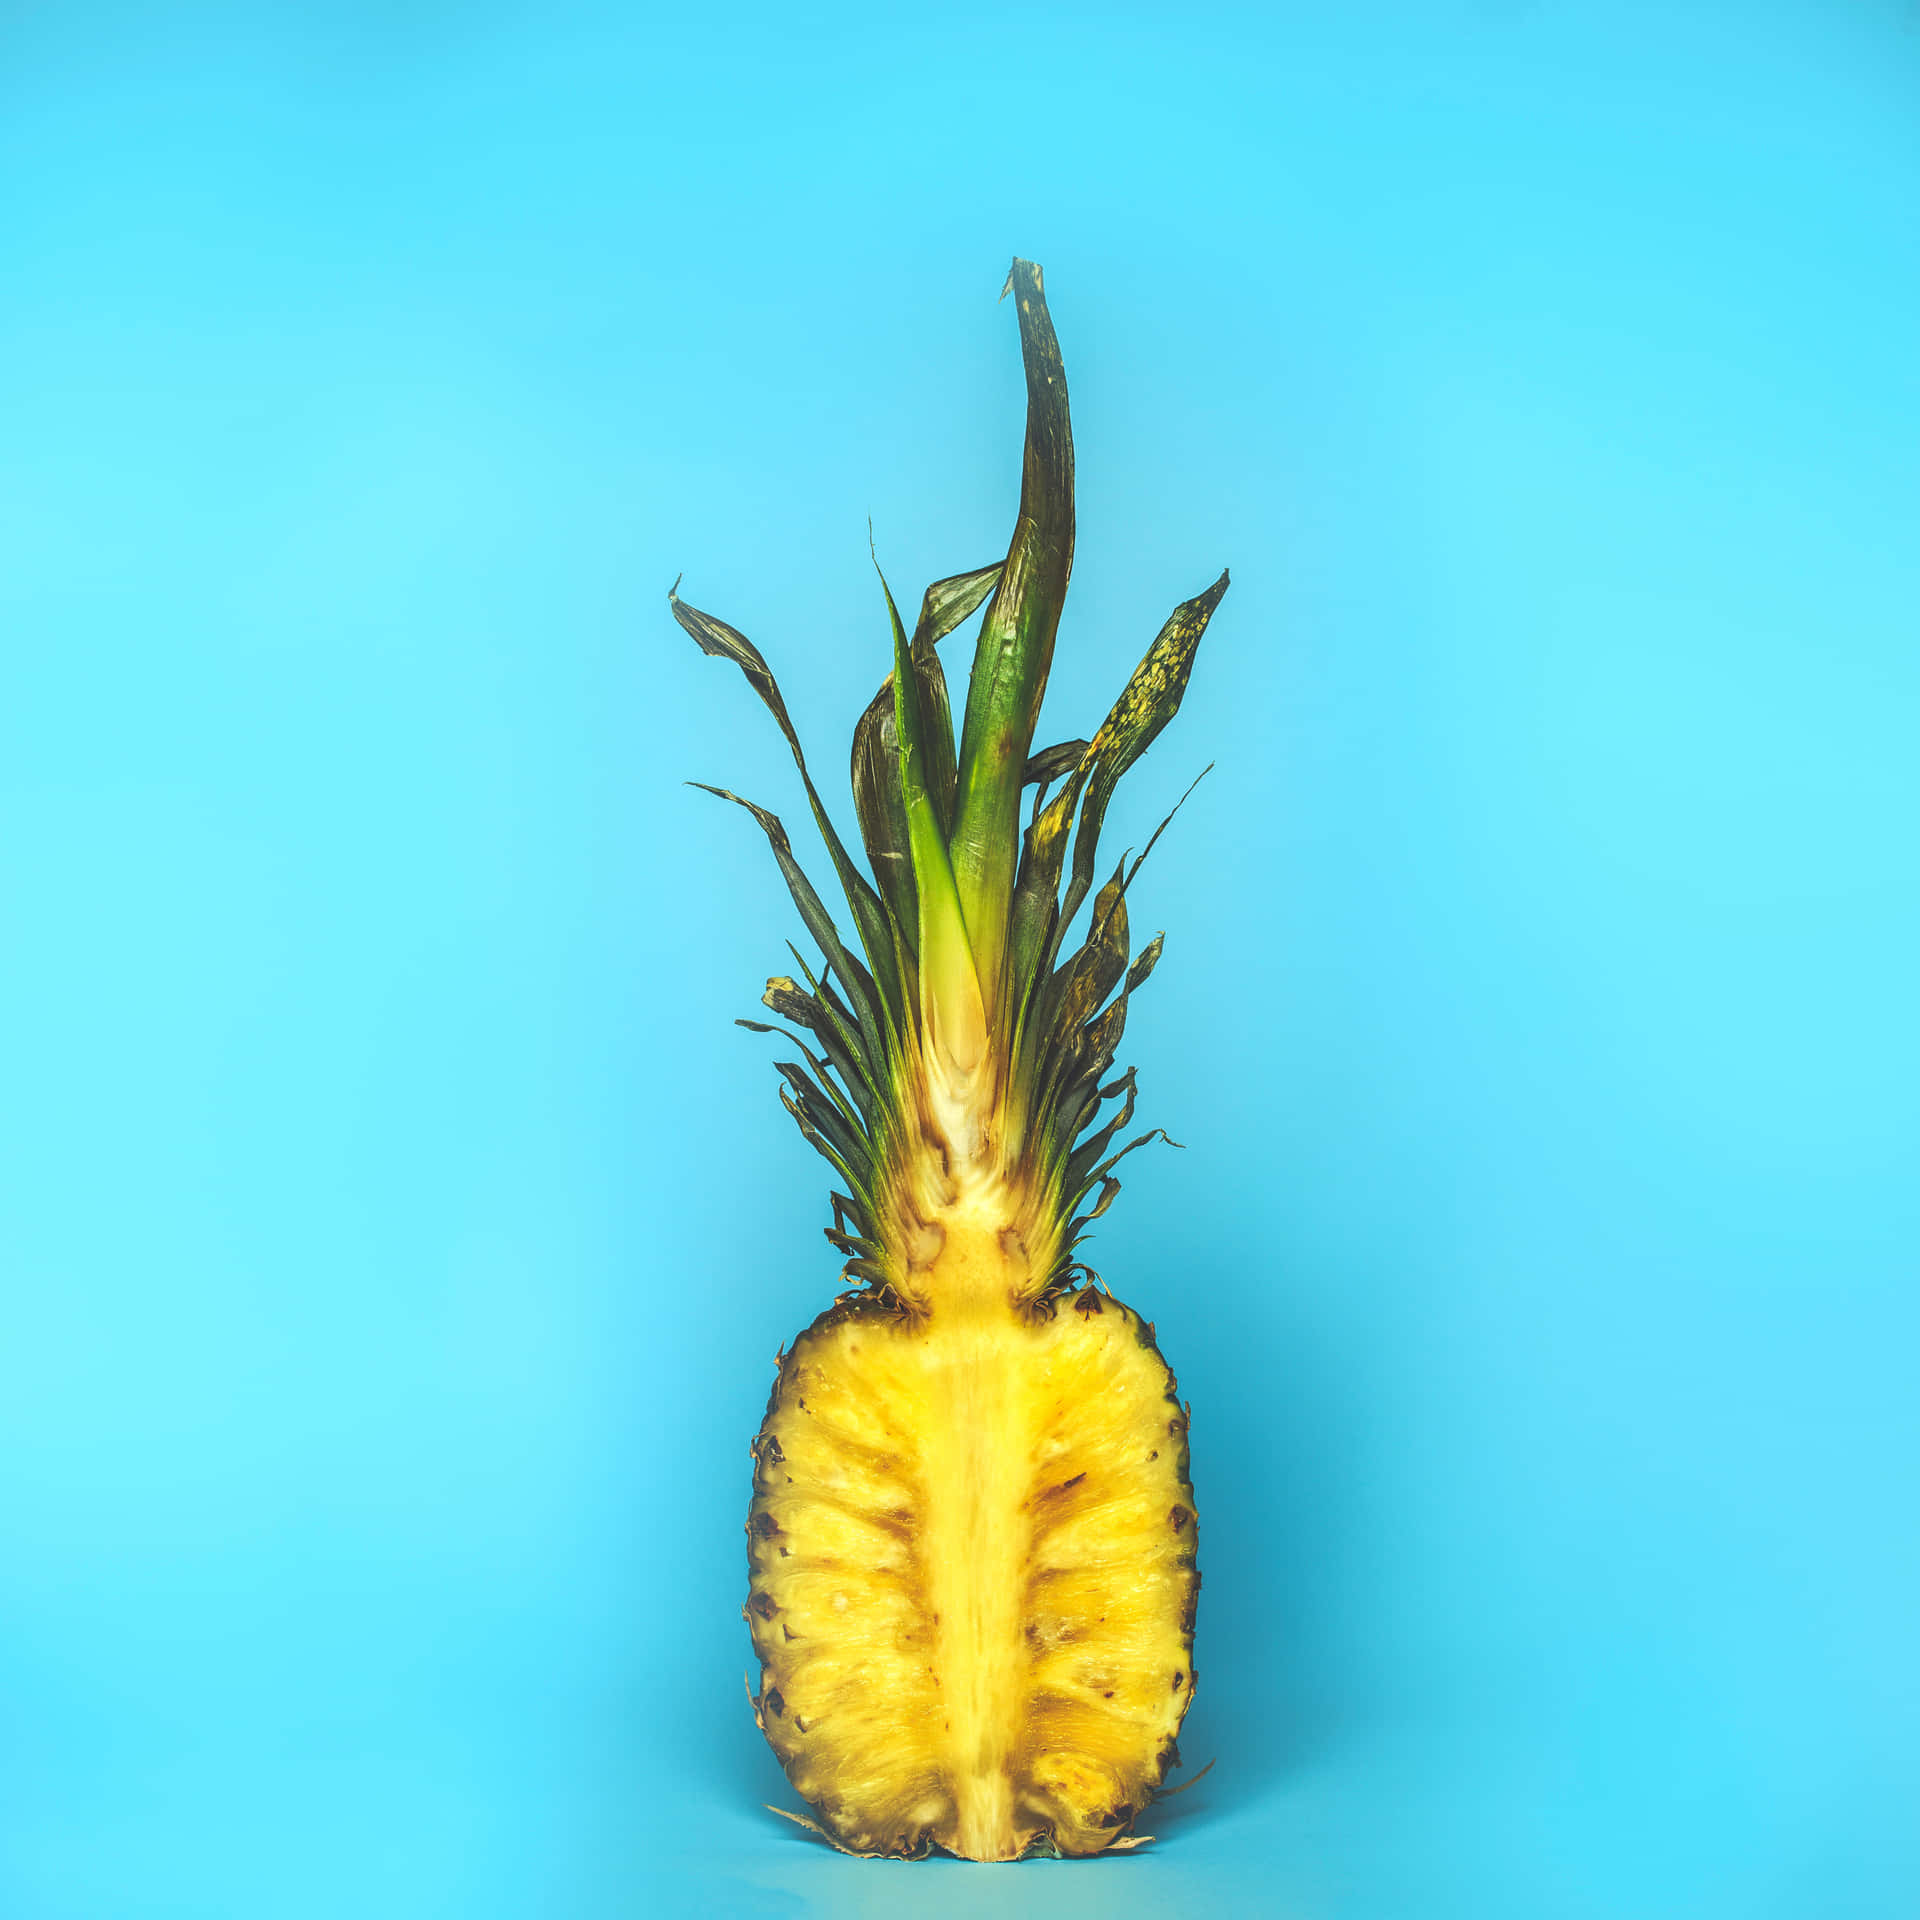 Ildolce Più Naturale Della Natura: Una Vivace Ananas In Una Giornata Di Sole.